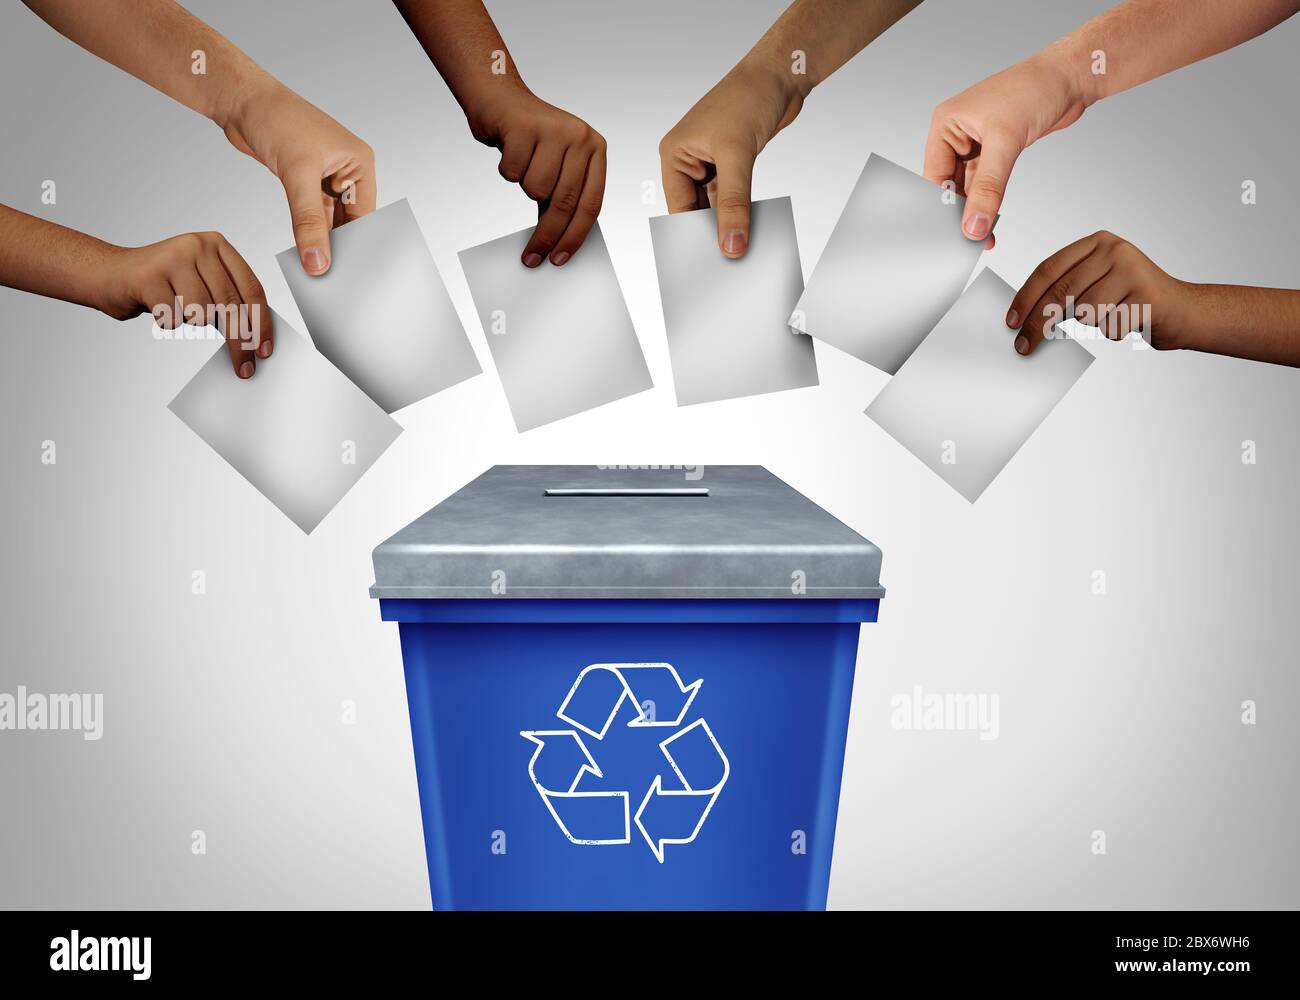 Vergeudete Wahl und Wahlbetrug Konzept als verschiedene Hände Gießen Stimmzettel in einem Wahllokal geformt wie ein Recycling-Papierkorb als manipulierte Wahl. Stockfoto